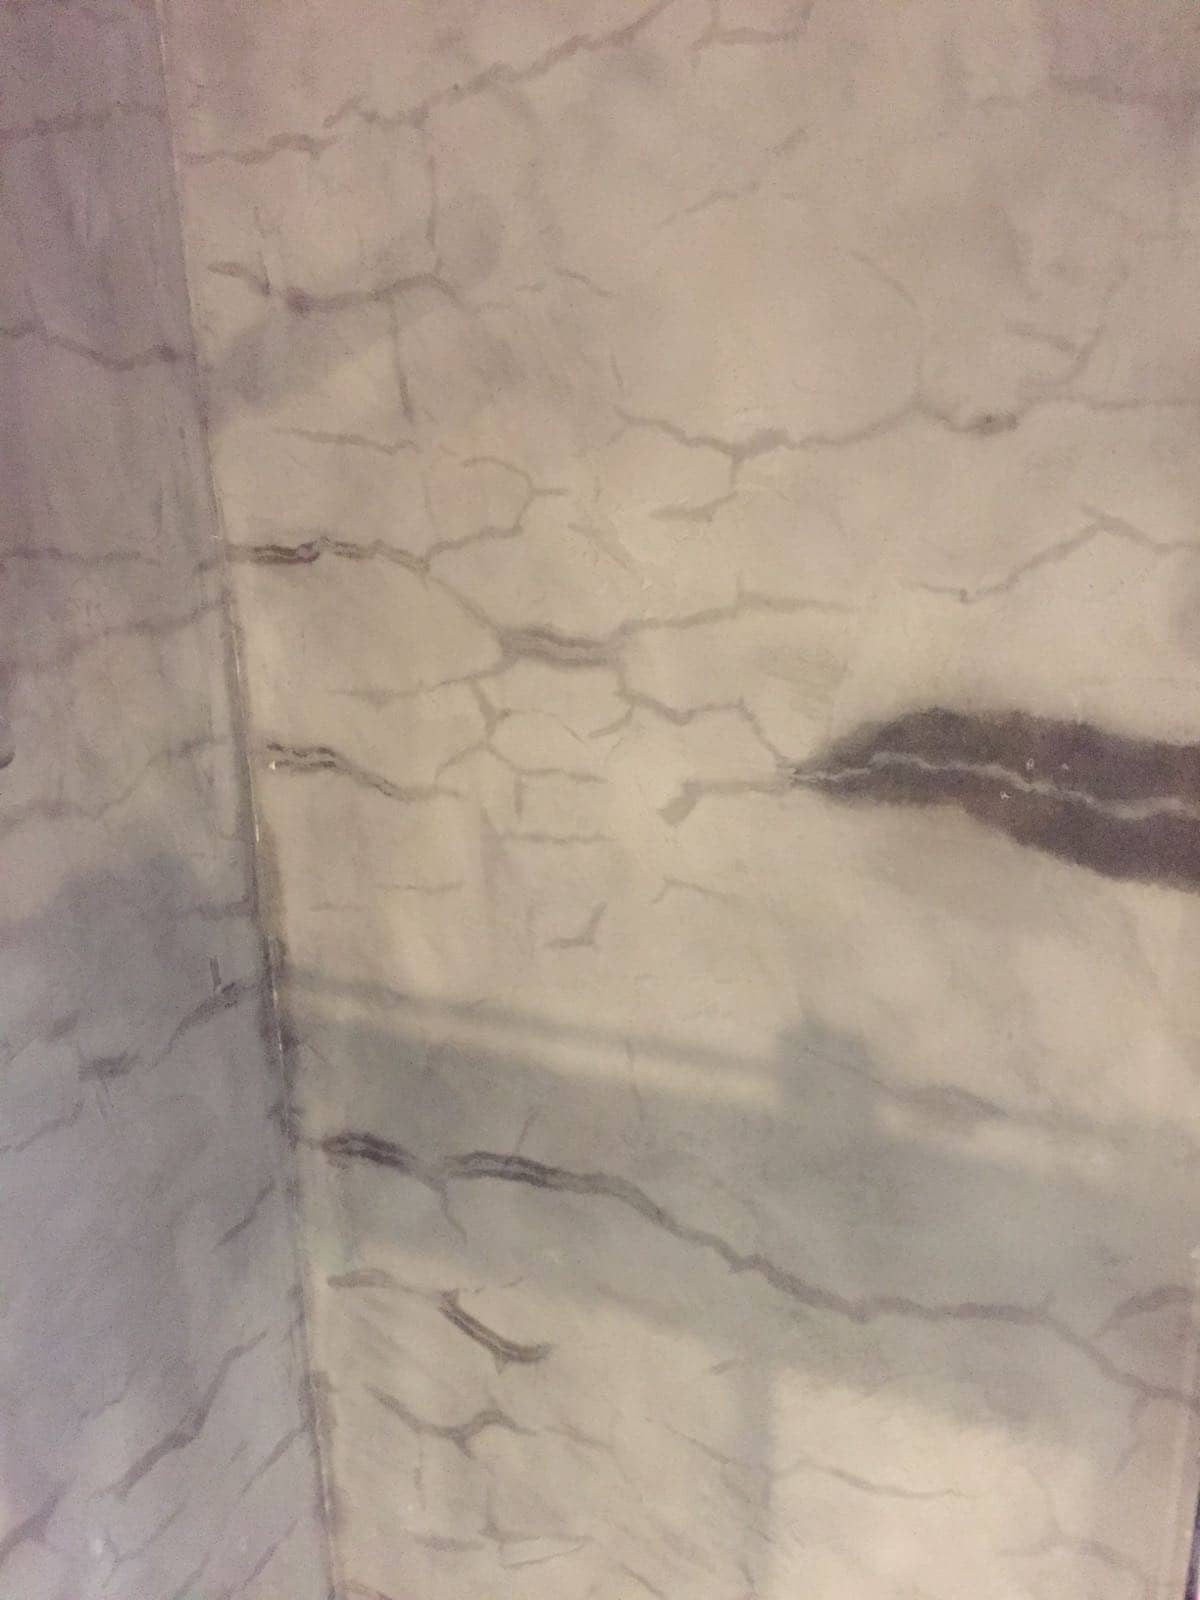 Microcemento y humedad en la pared de la ducha
 